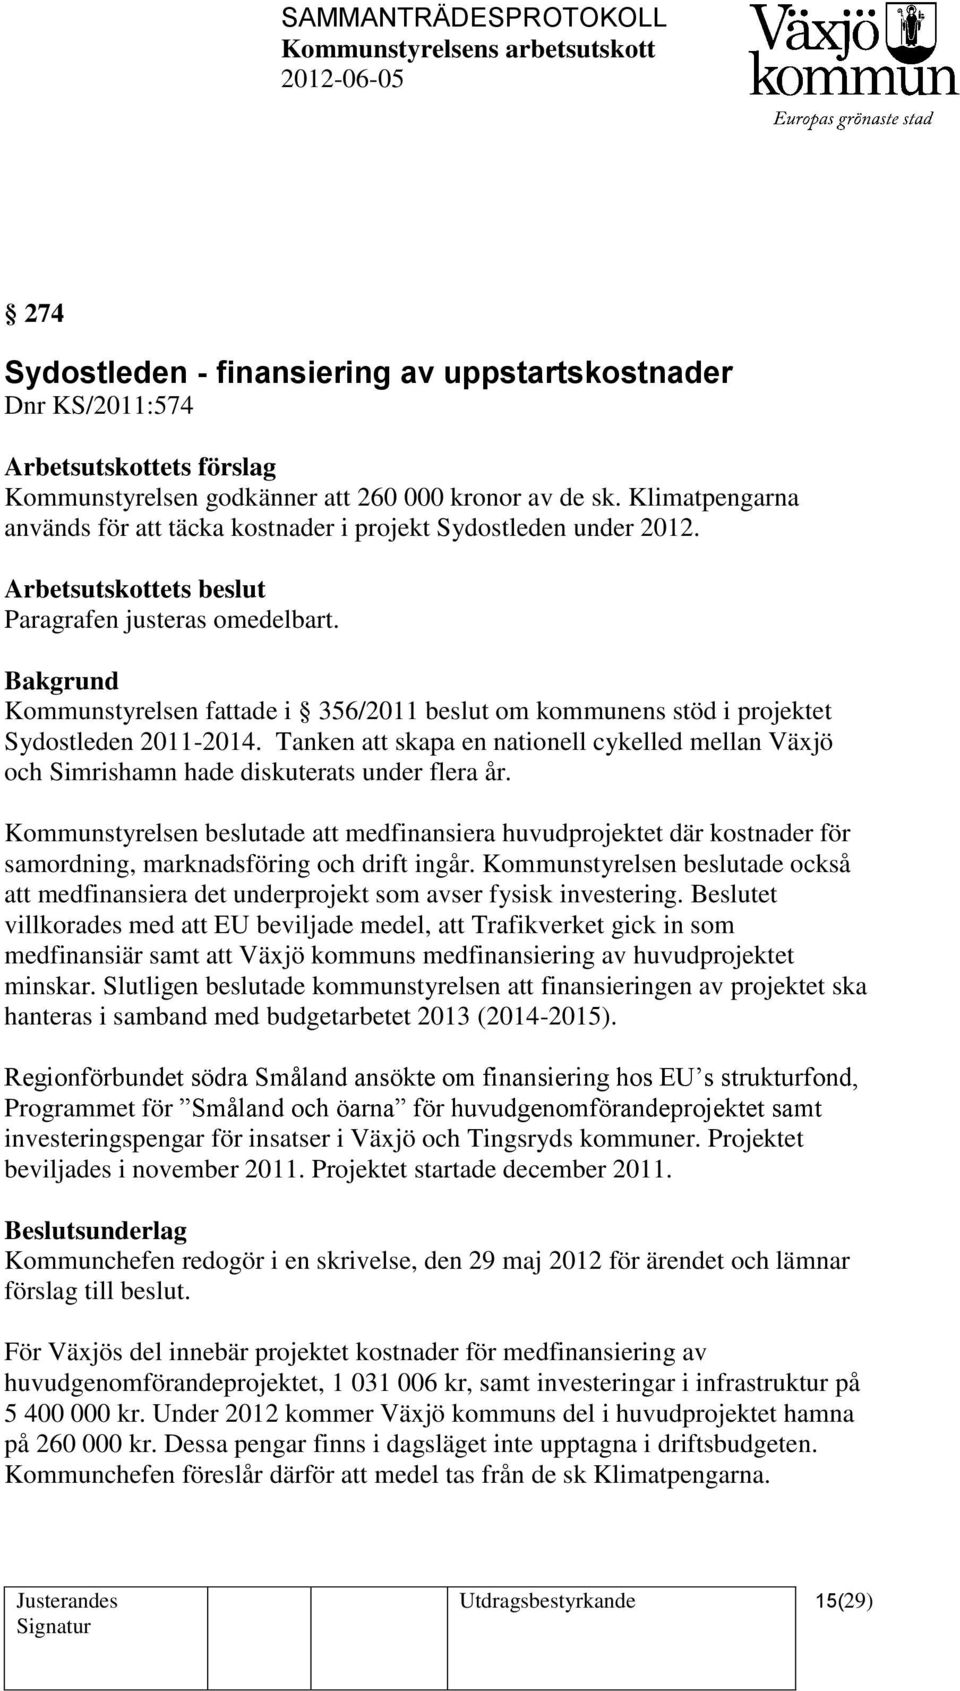 Kommunstyrelsen fattade i 356/2011 beslut om kommunens stöd i projektet Sydostleden 2011-2014. Tanken att skapa en nationell cykelled mellan Växjö och Simrishamn hade diskuterats under flera år.